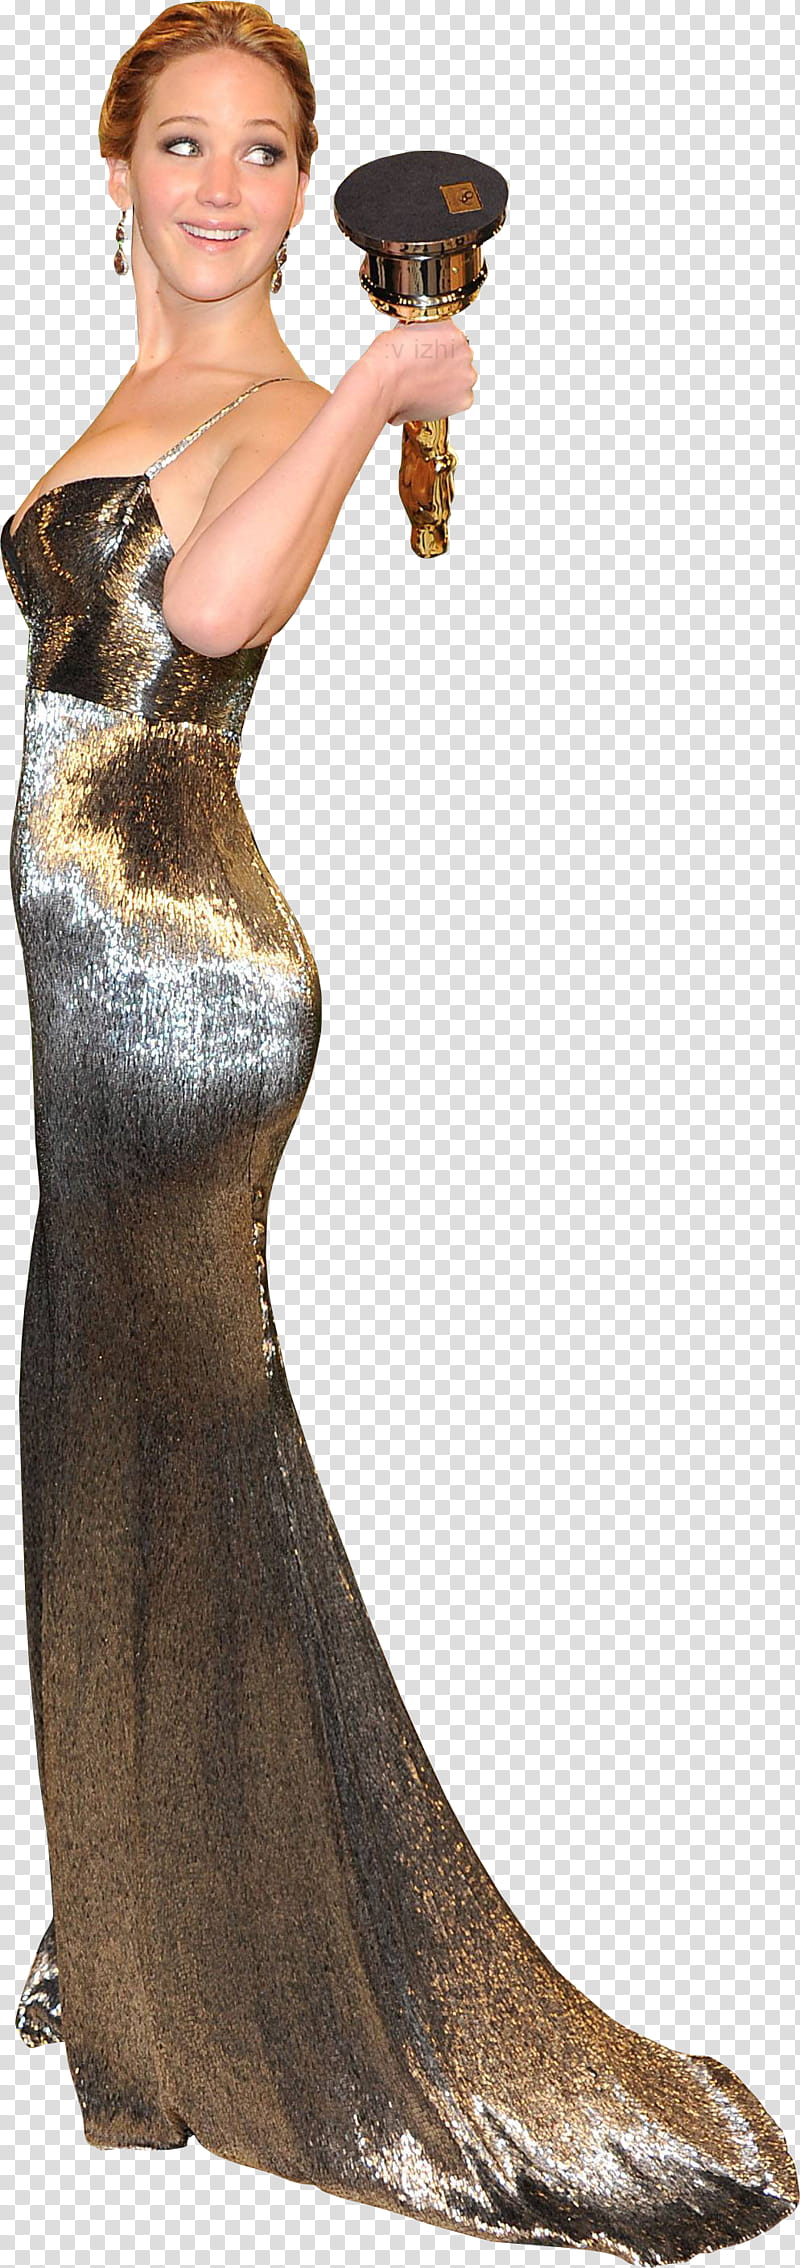 Jennifer Lawrence ,  transparent background PNG clipart